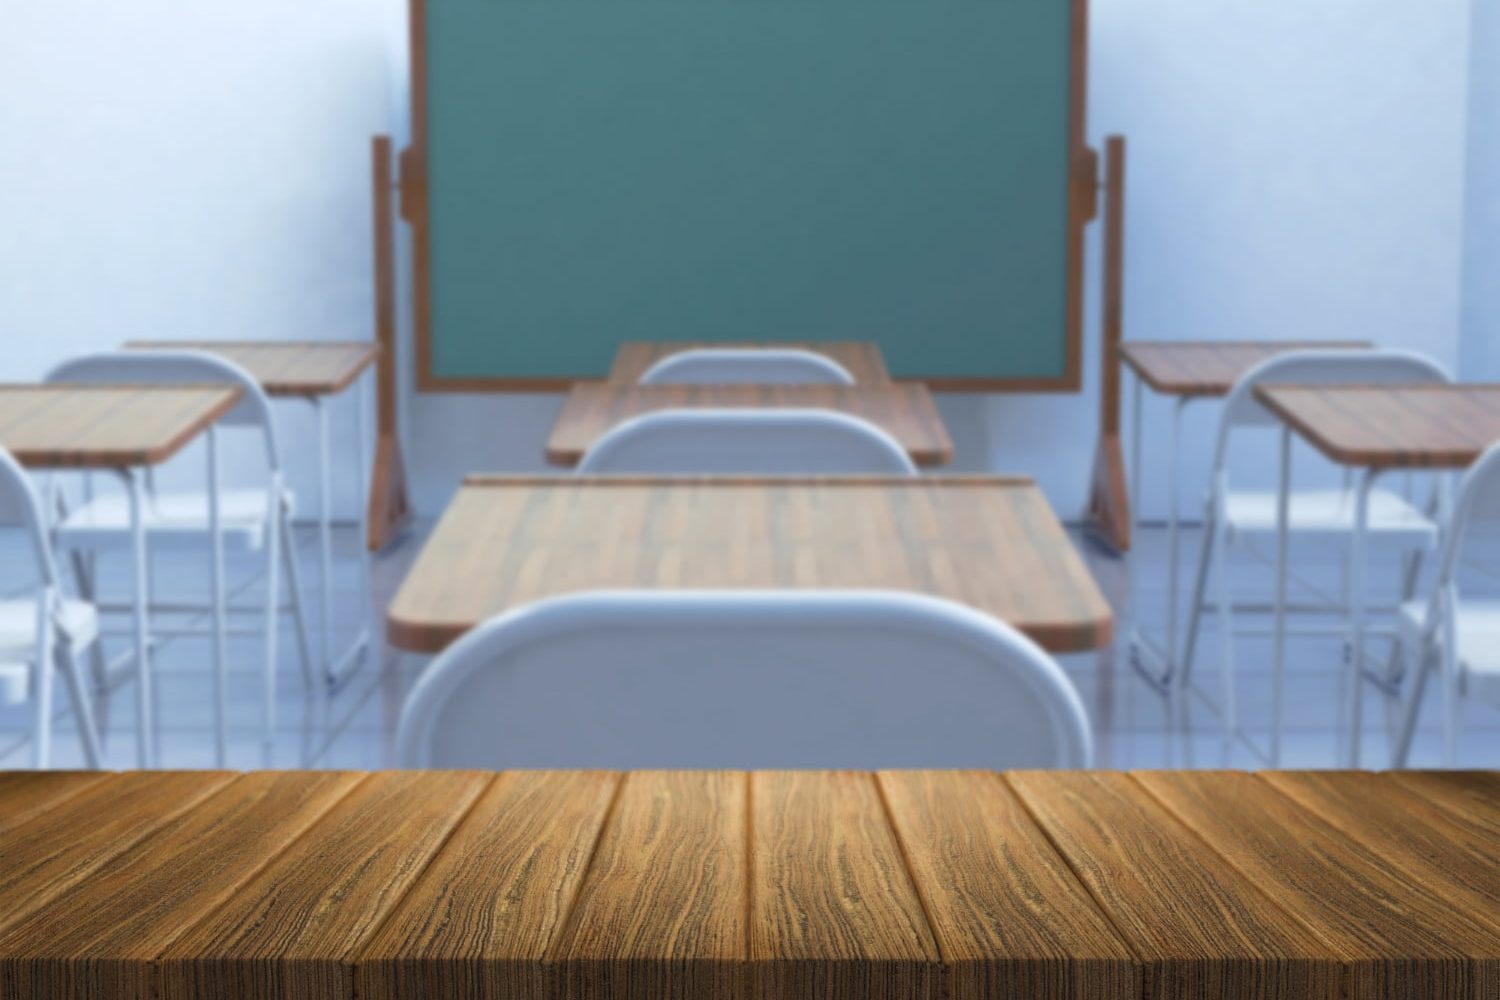 Clan del Golfo amenaza a docentes / útiles escolares